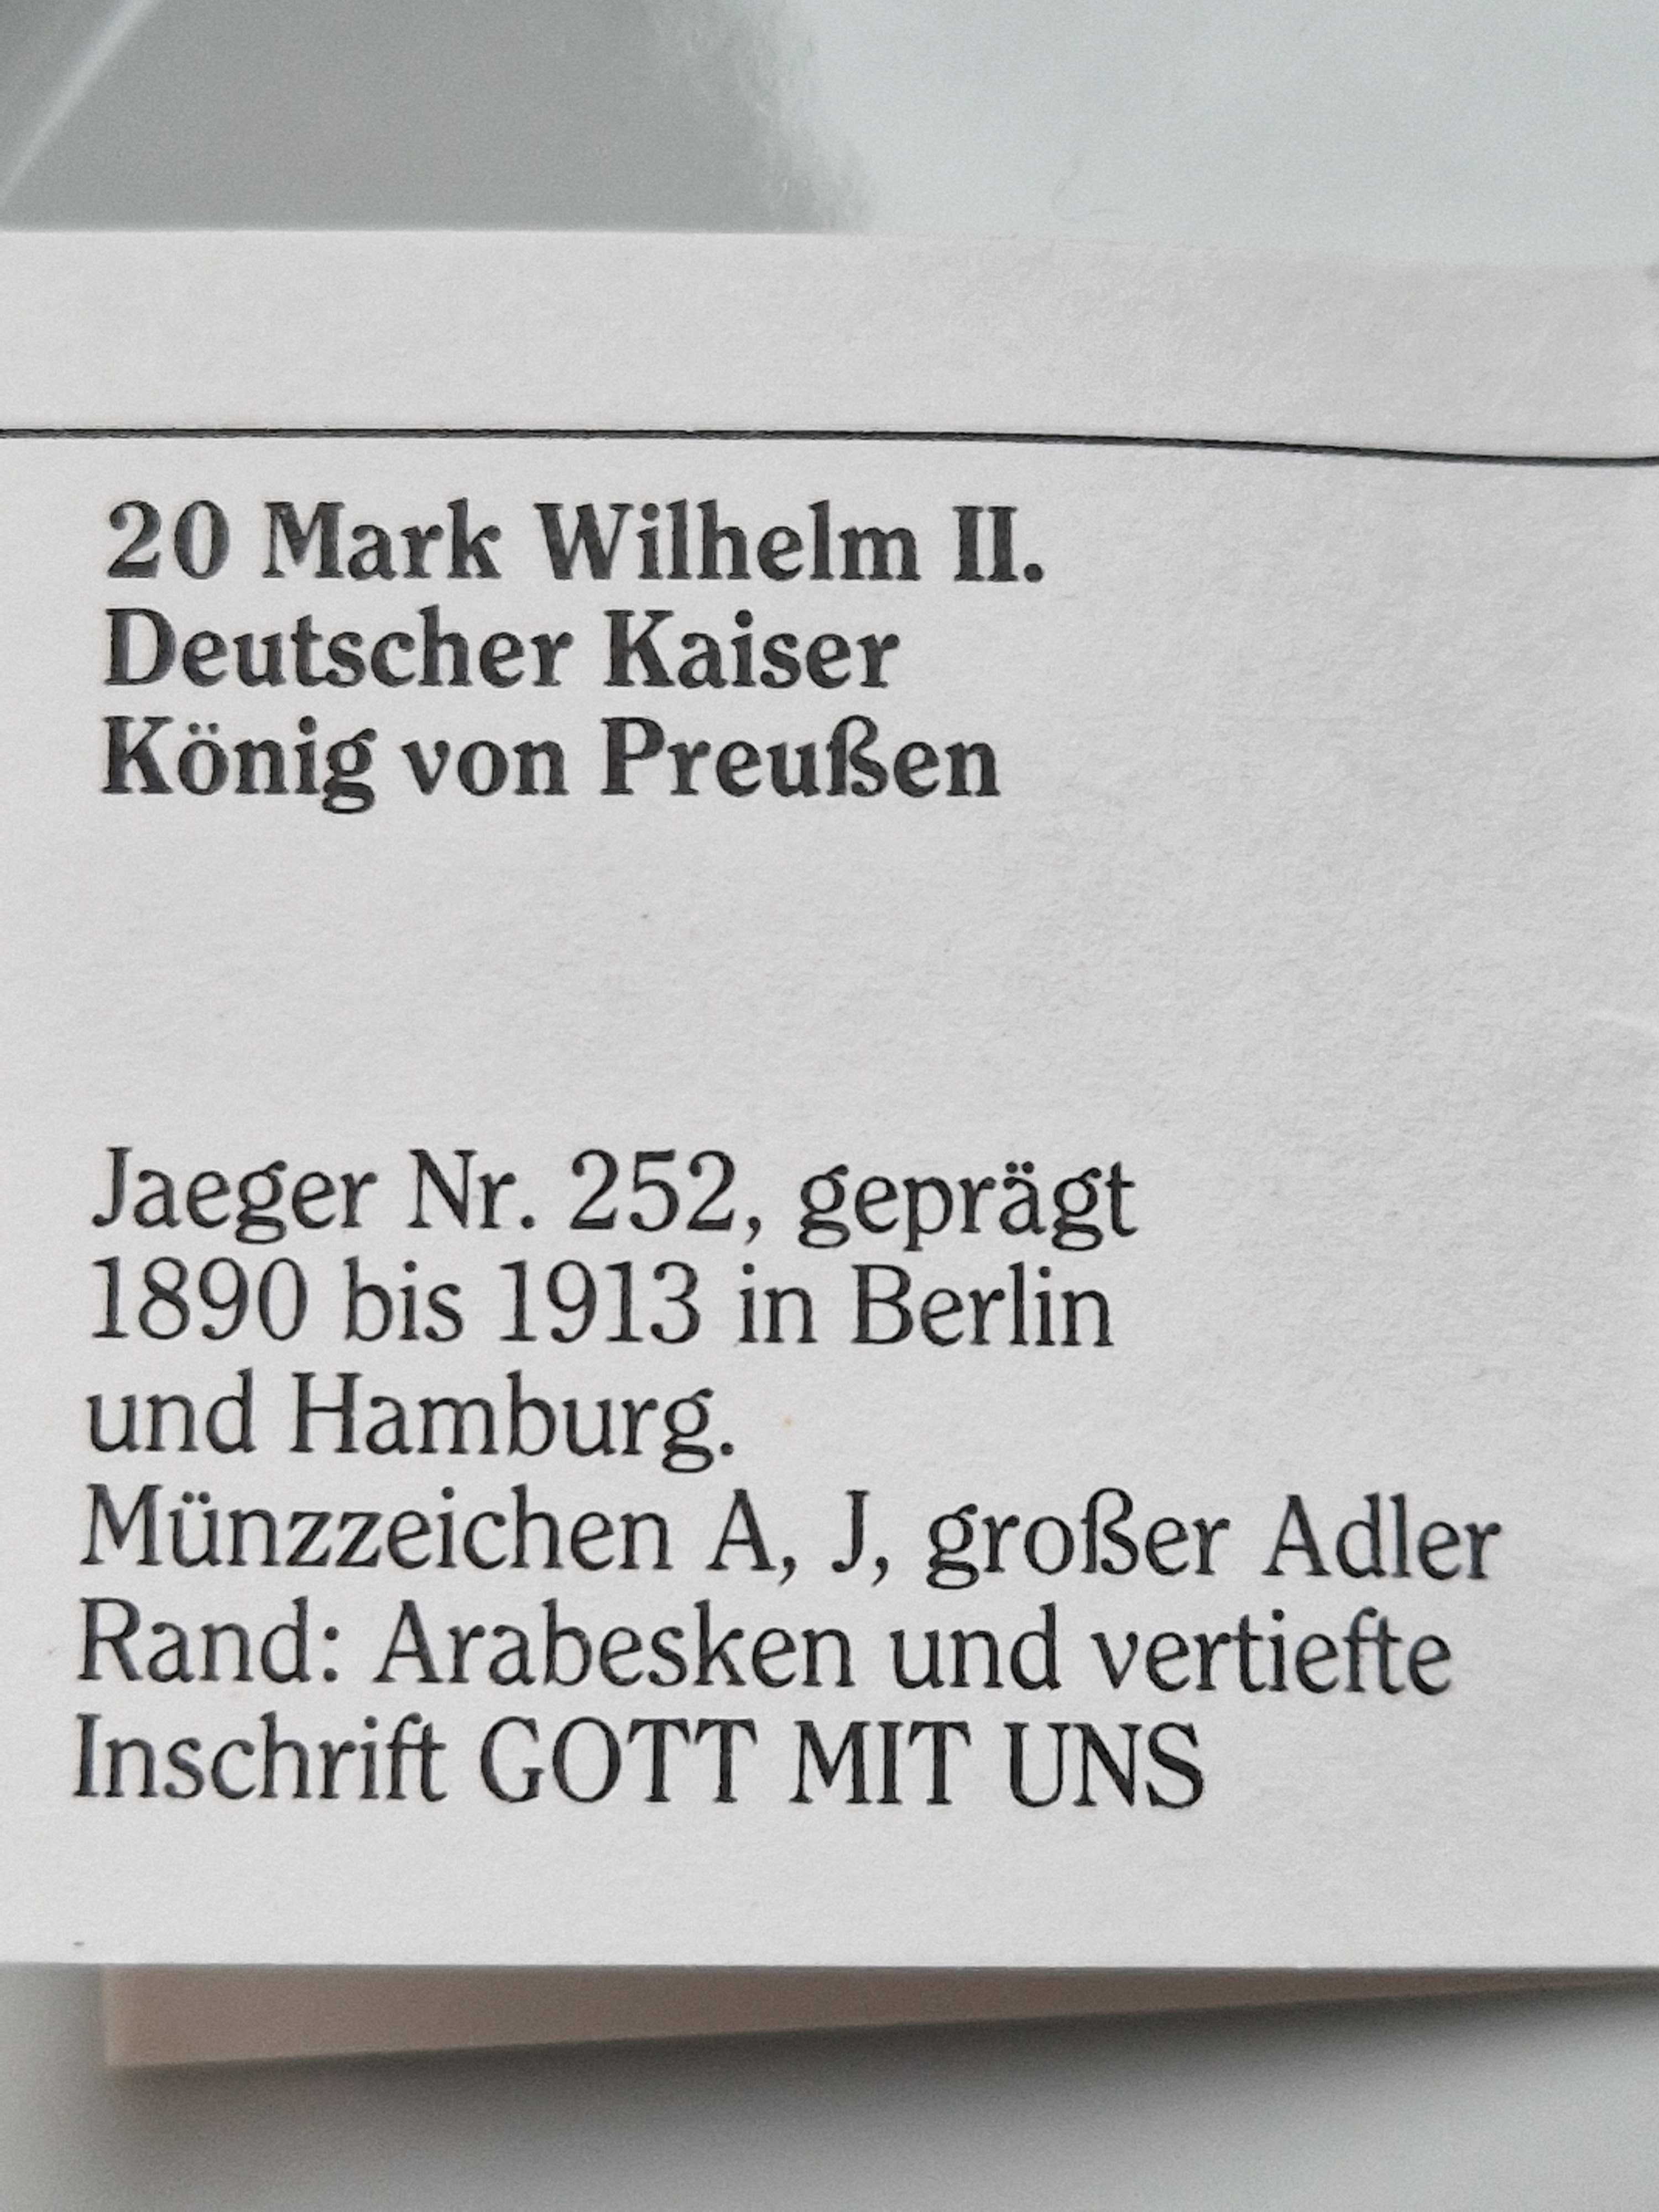 Zamiana 20 MarkWilhelm II Deutscher Keiser König von Preußen.